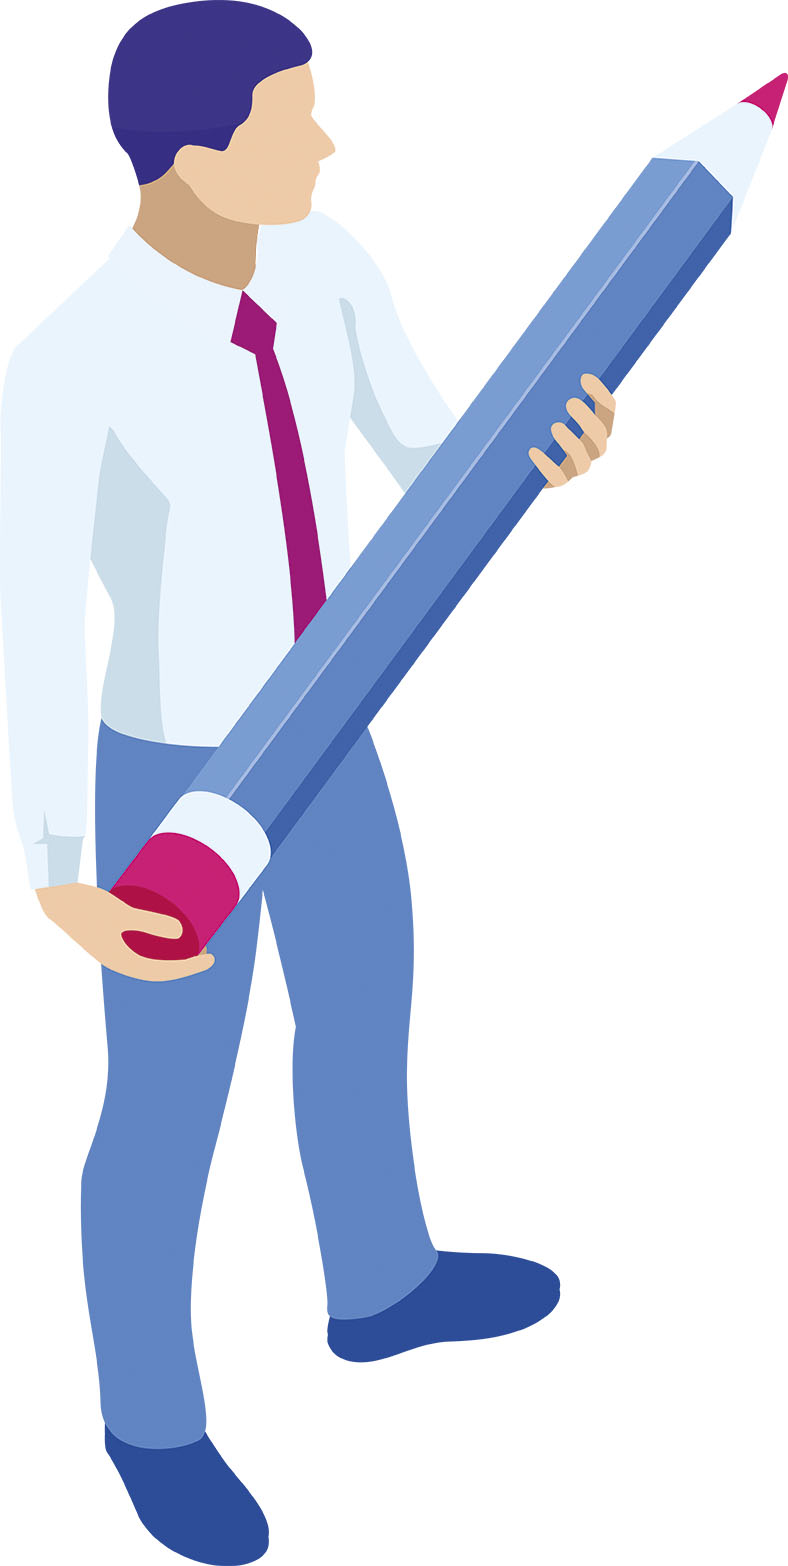 Grafik in Blautönen zeigt eine Person, die einen übergroßen Buntstift in den Händen hält.